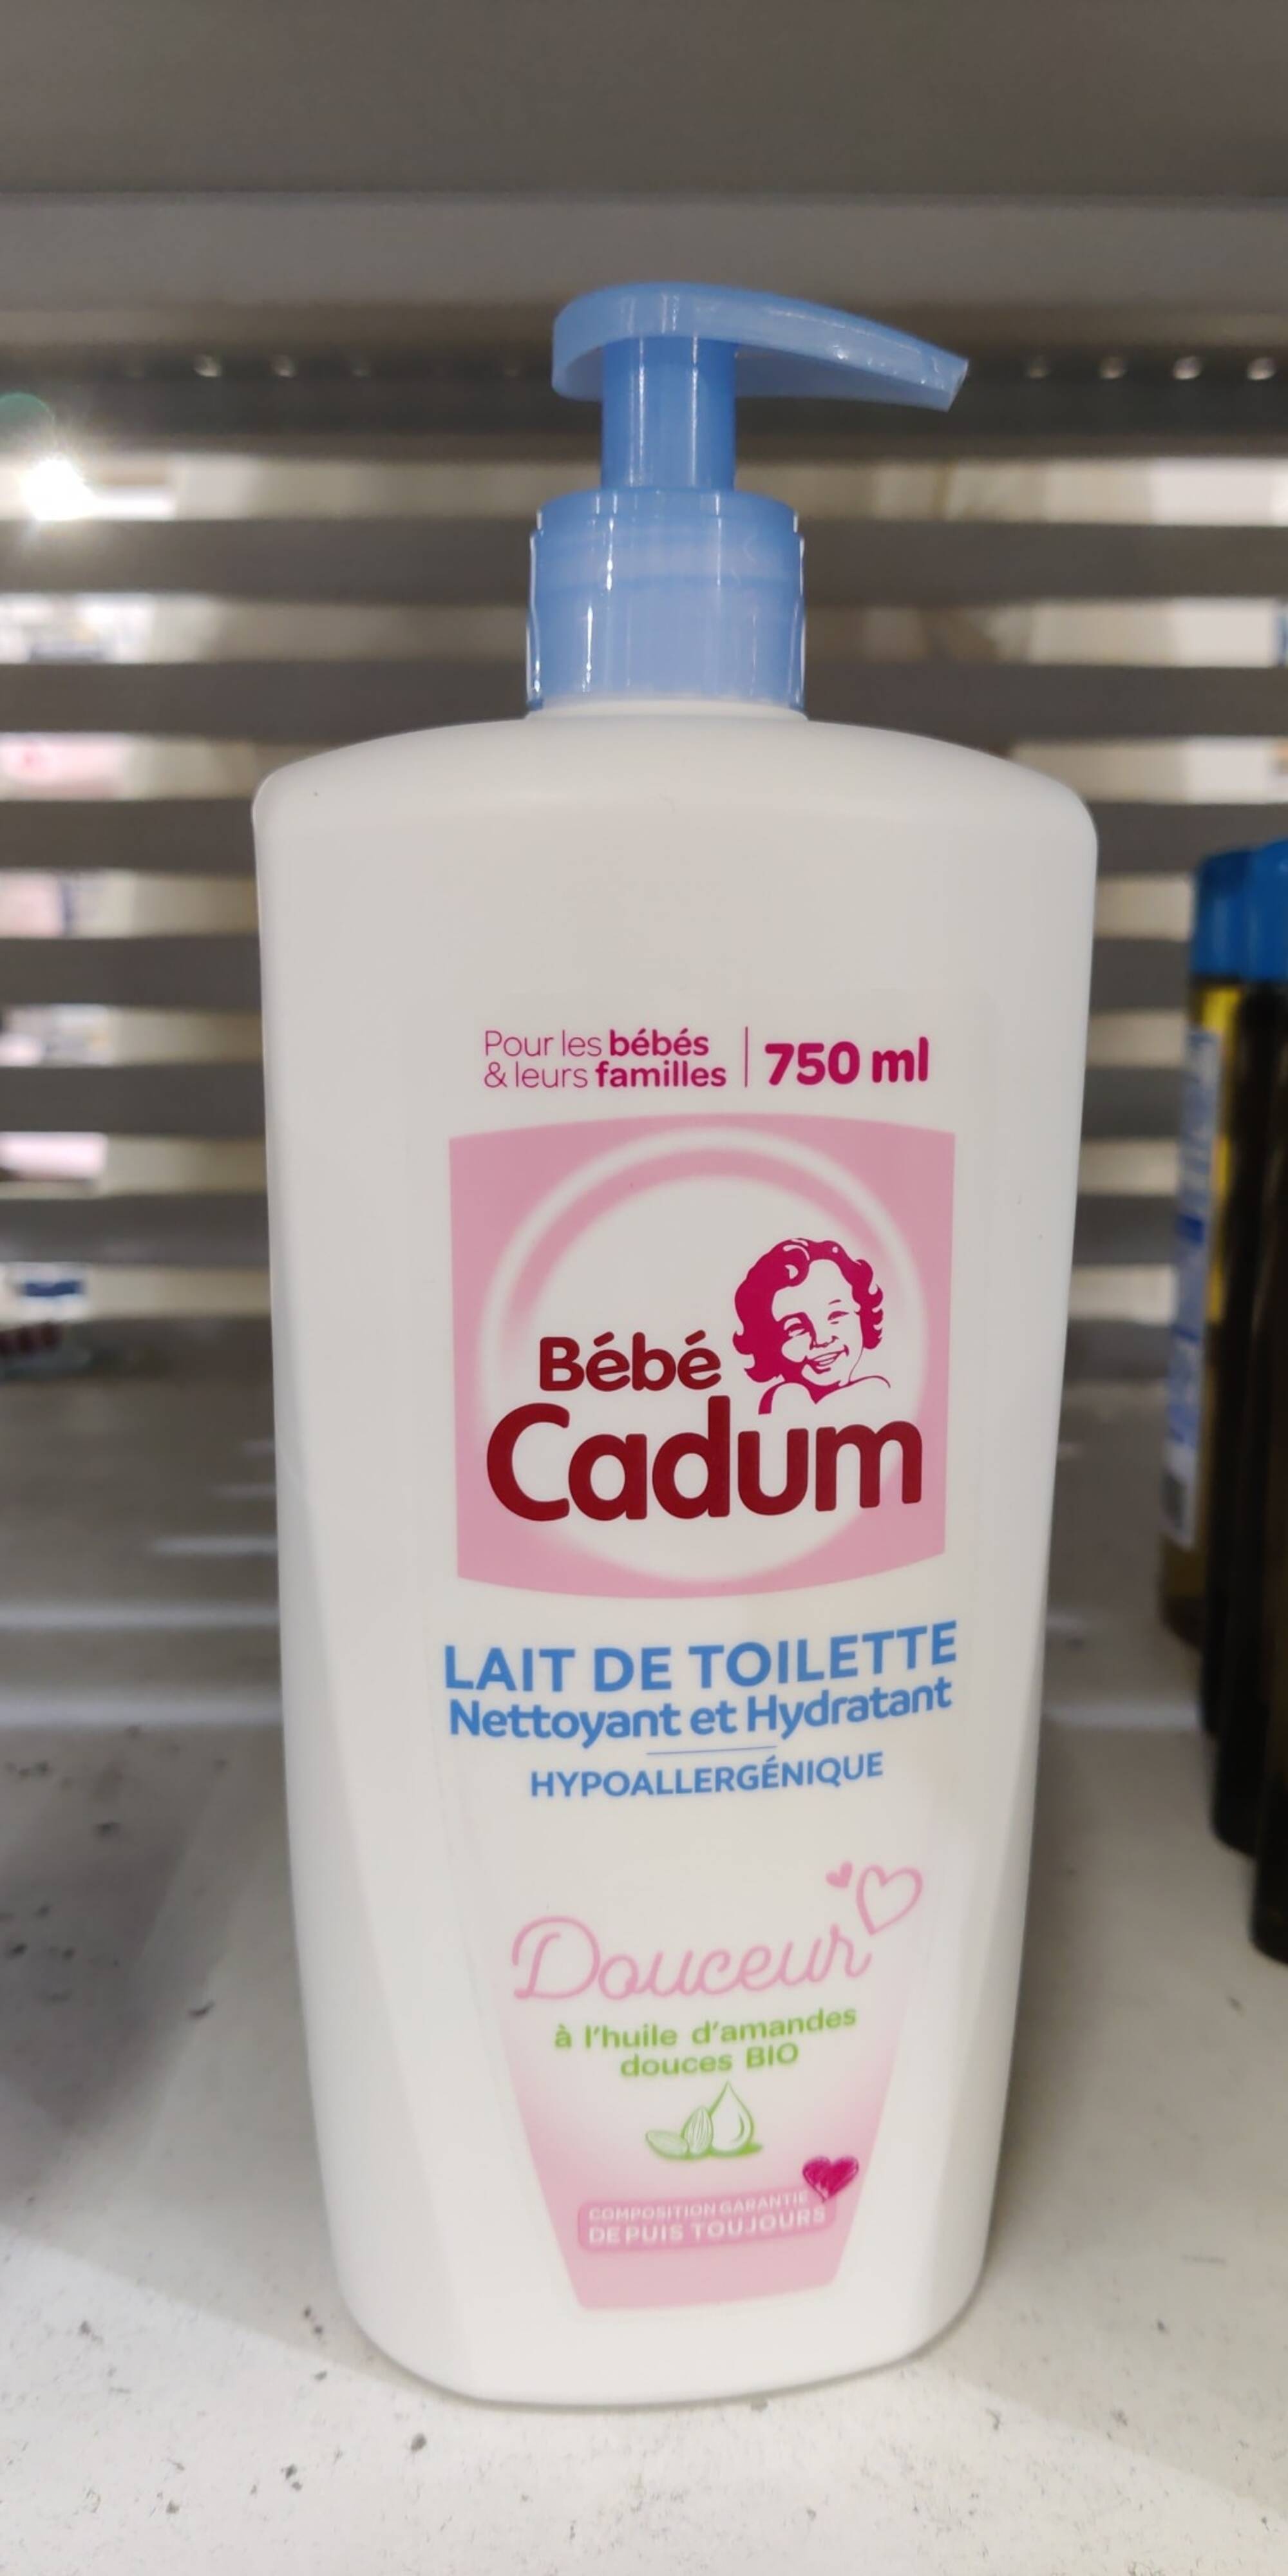 Cadum Bébé Cadum Gel Nettoyant Corps et Cheveux à l'Huile d'Amandes Douces  Bio pour Bébé, 750ml : : Bébé et Puériculture